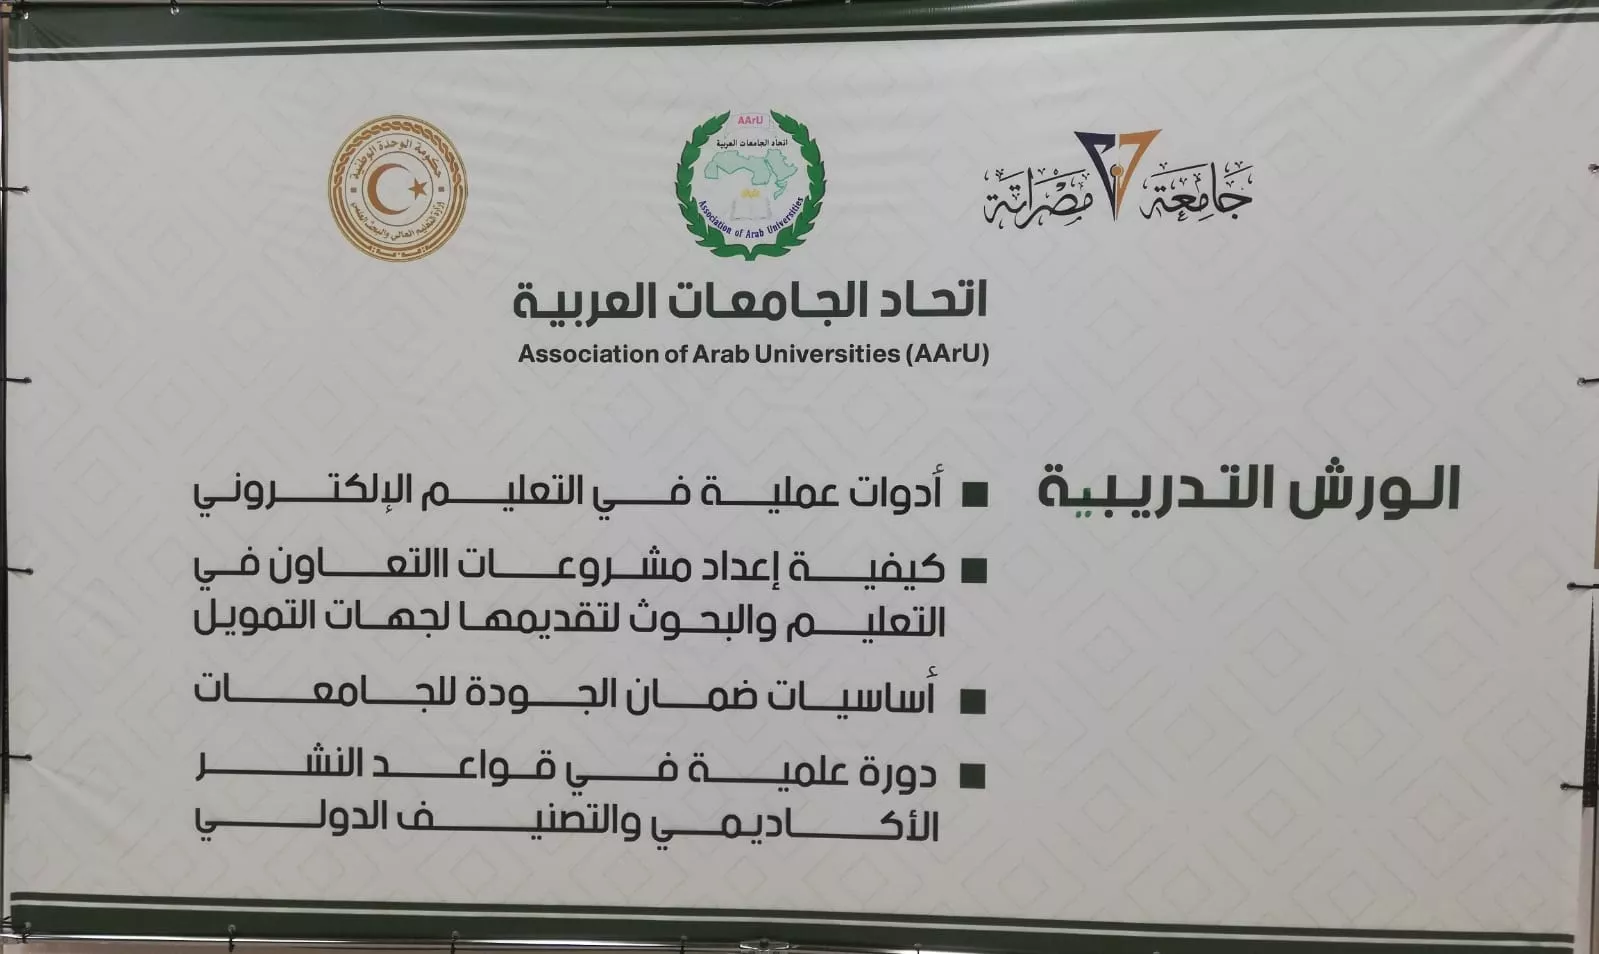 بإشراف اتحاد الجامعات العربية شاركة الأكاديمية الليبية في ورشة عمل حول التعليم الالكتروني